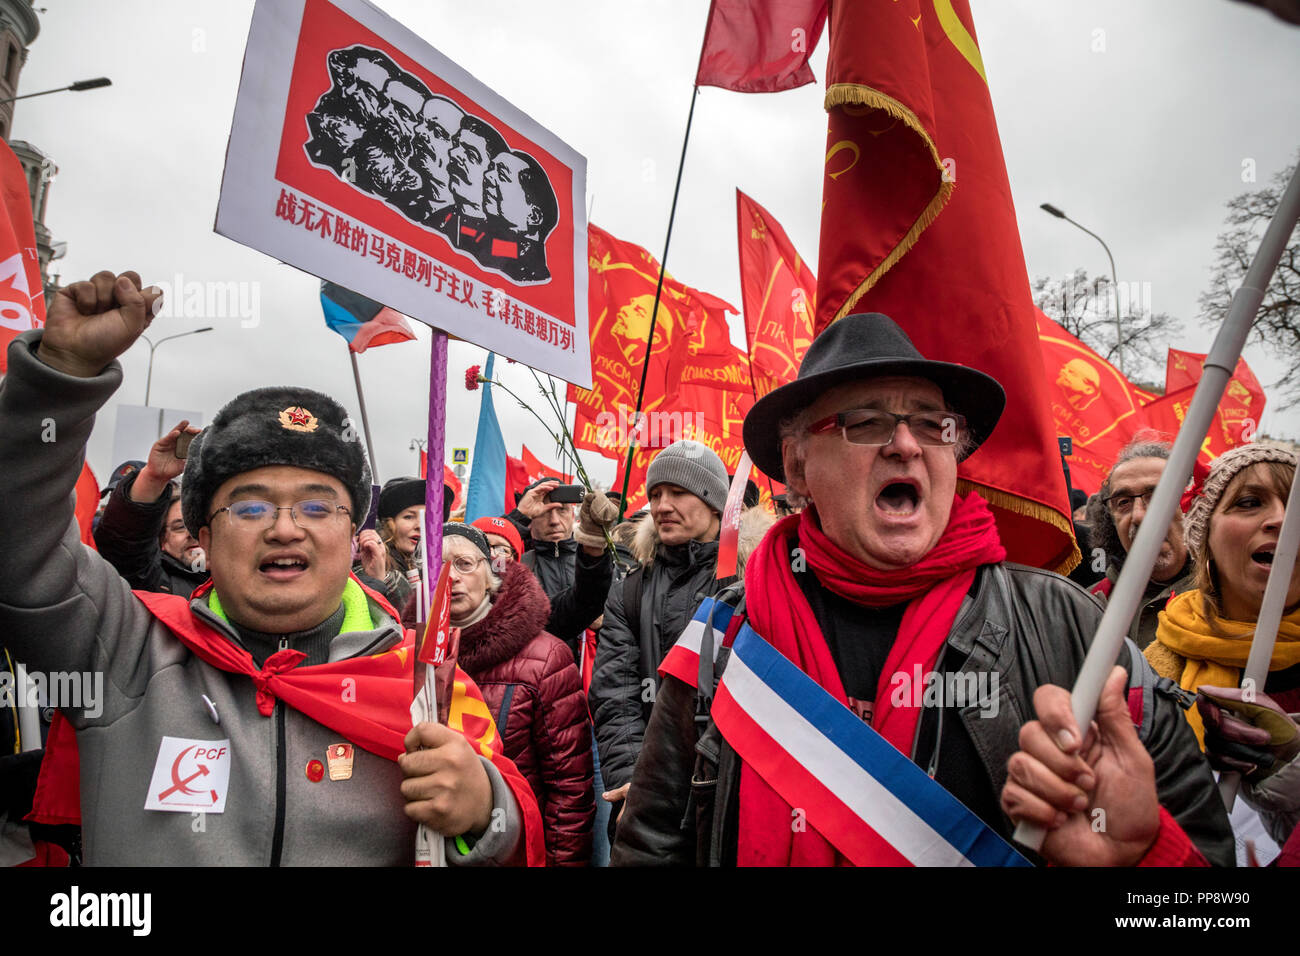 Anhänger der Kommunistischen Partei der Russischen Föderation (Cprf) aus verschiedenen Ländern März durch das Zentrum von Moskau in Russland am 7. November 2017 Stockfoto